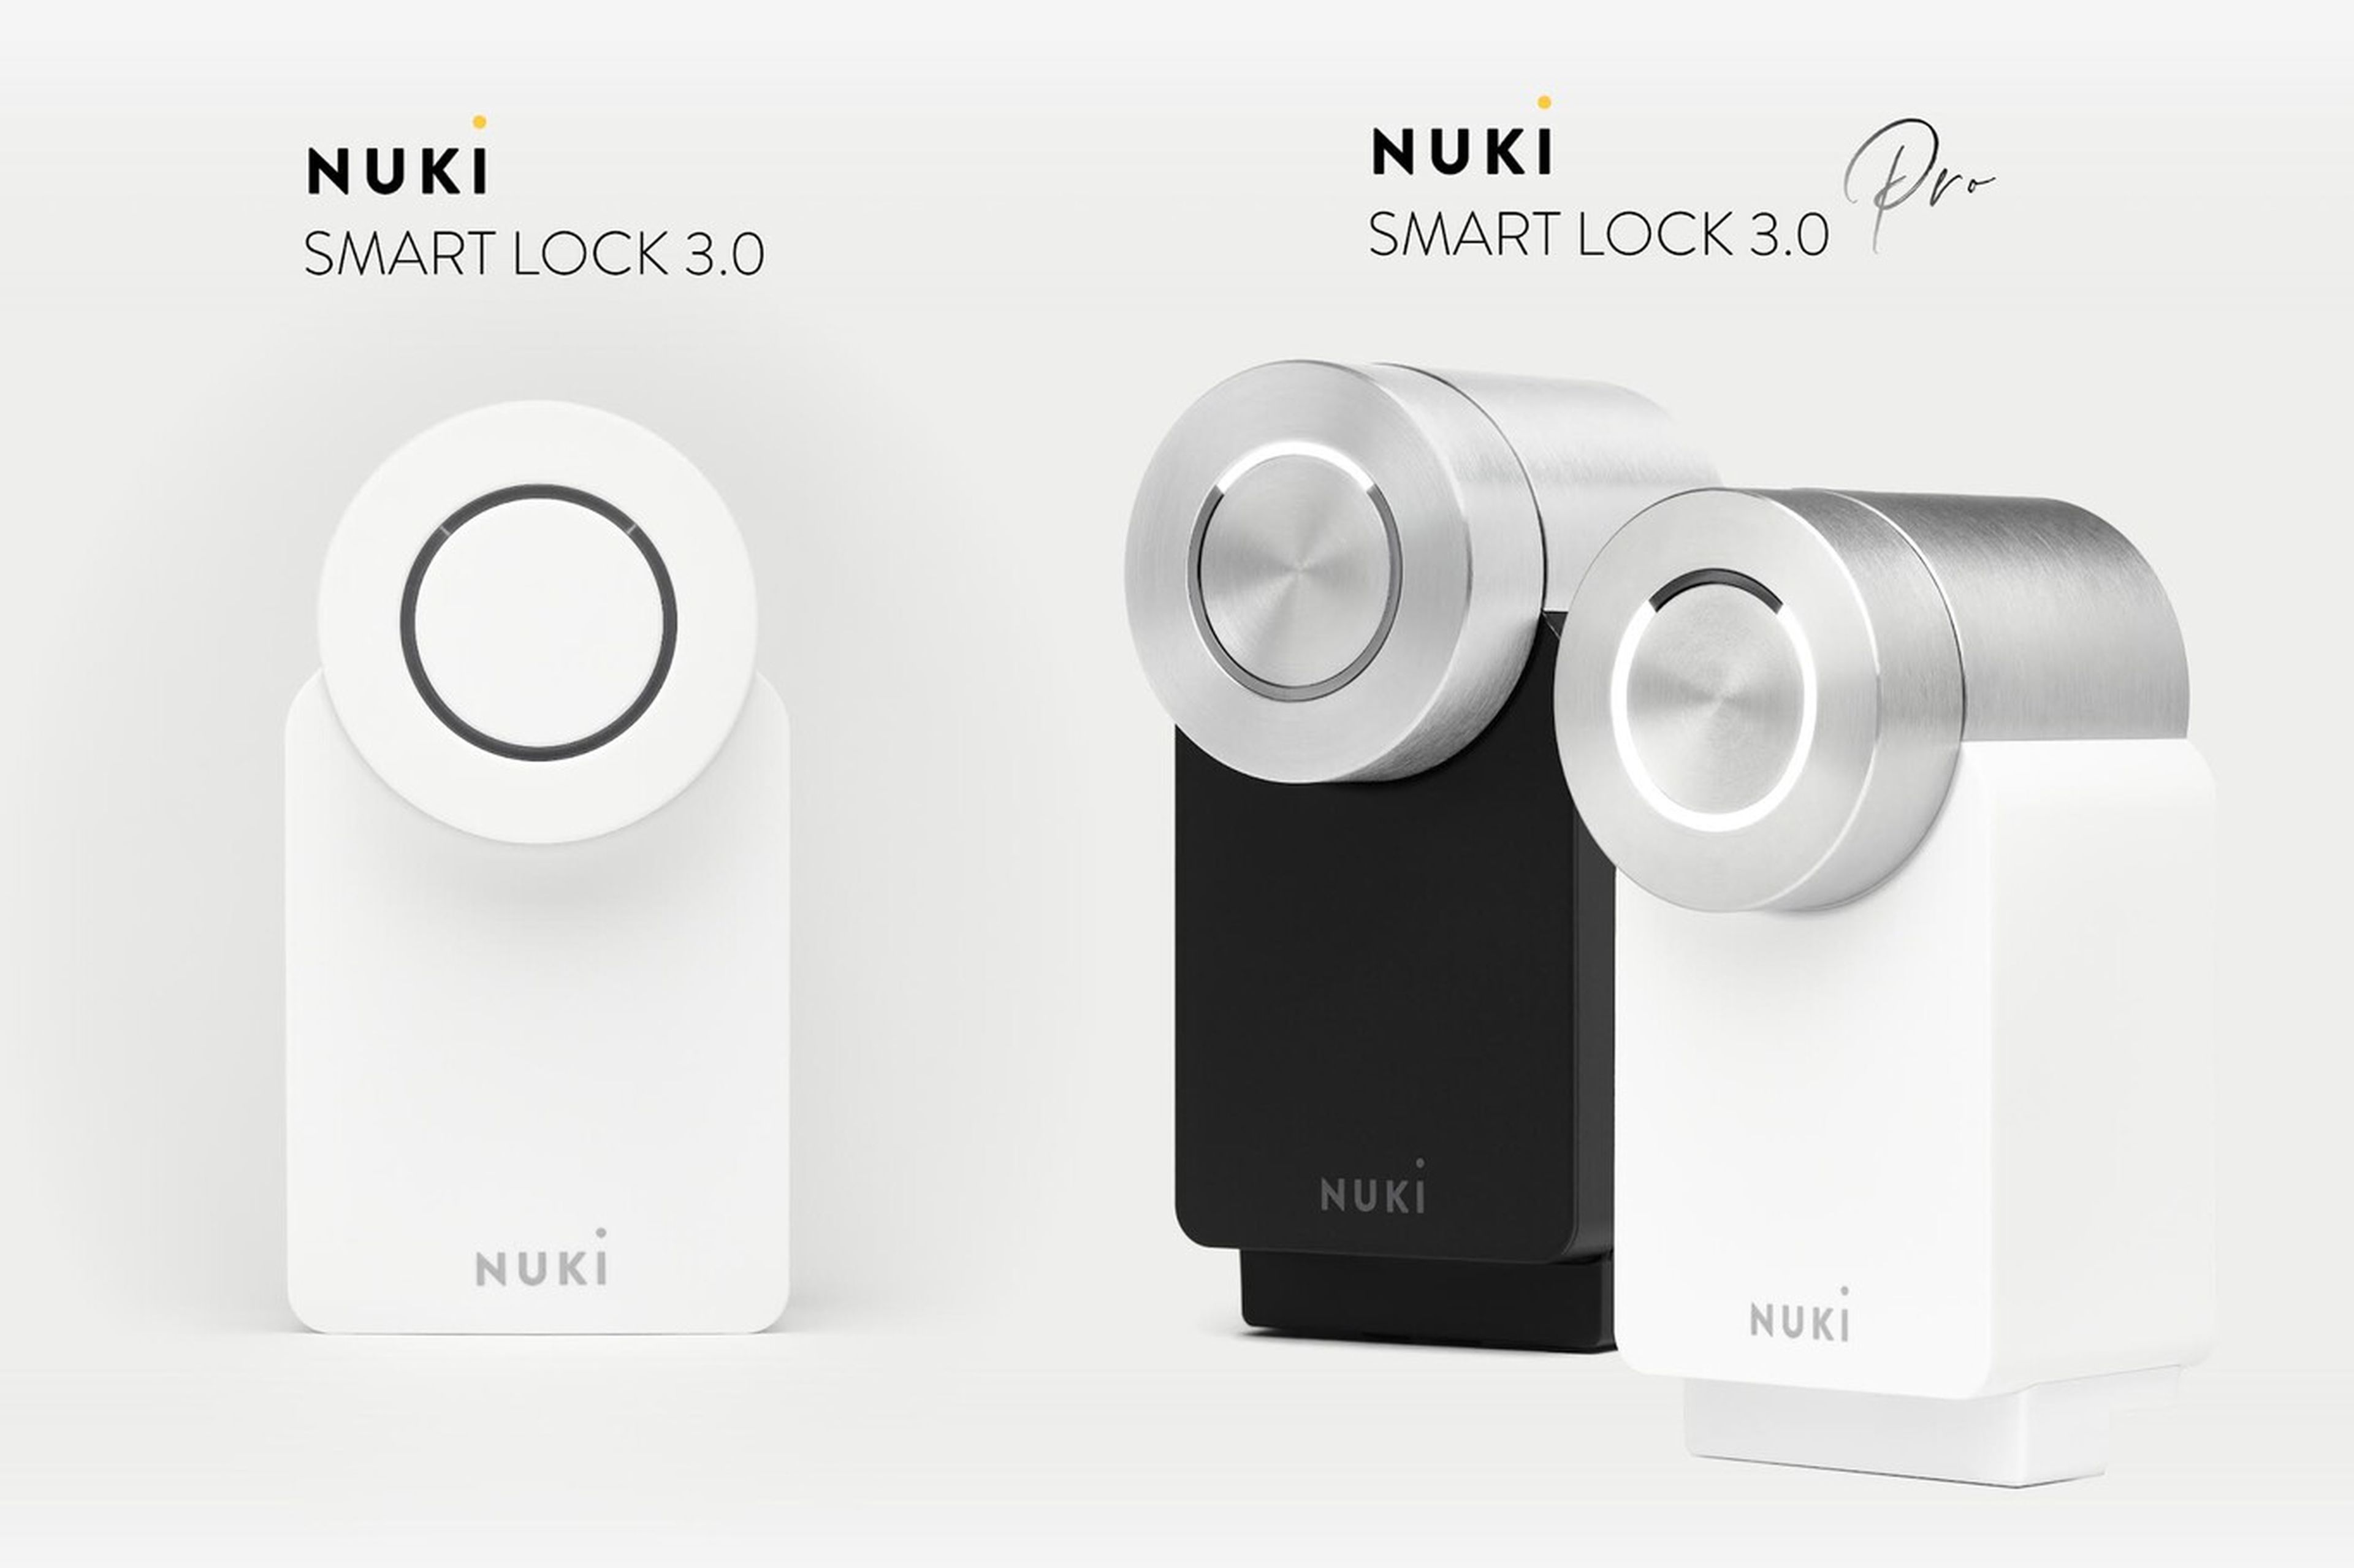 Smart Lock 3.0 y Smart Lock 3.0 Pro, así son las nuevas cerraduras inteligentes de Nuki